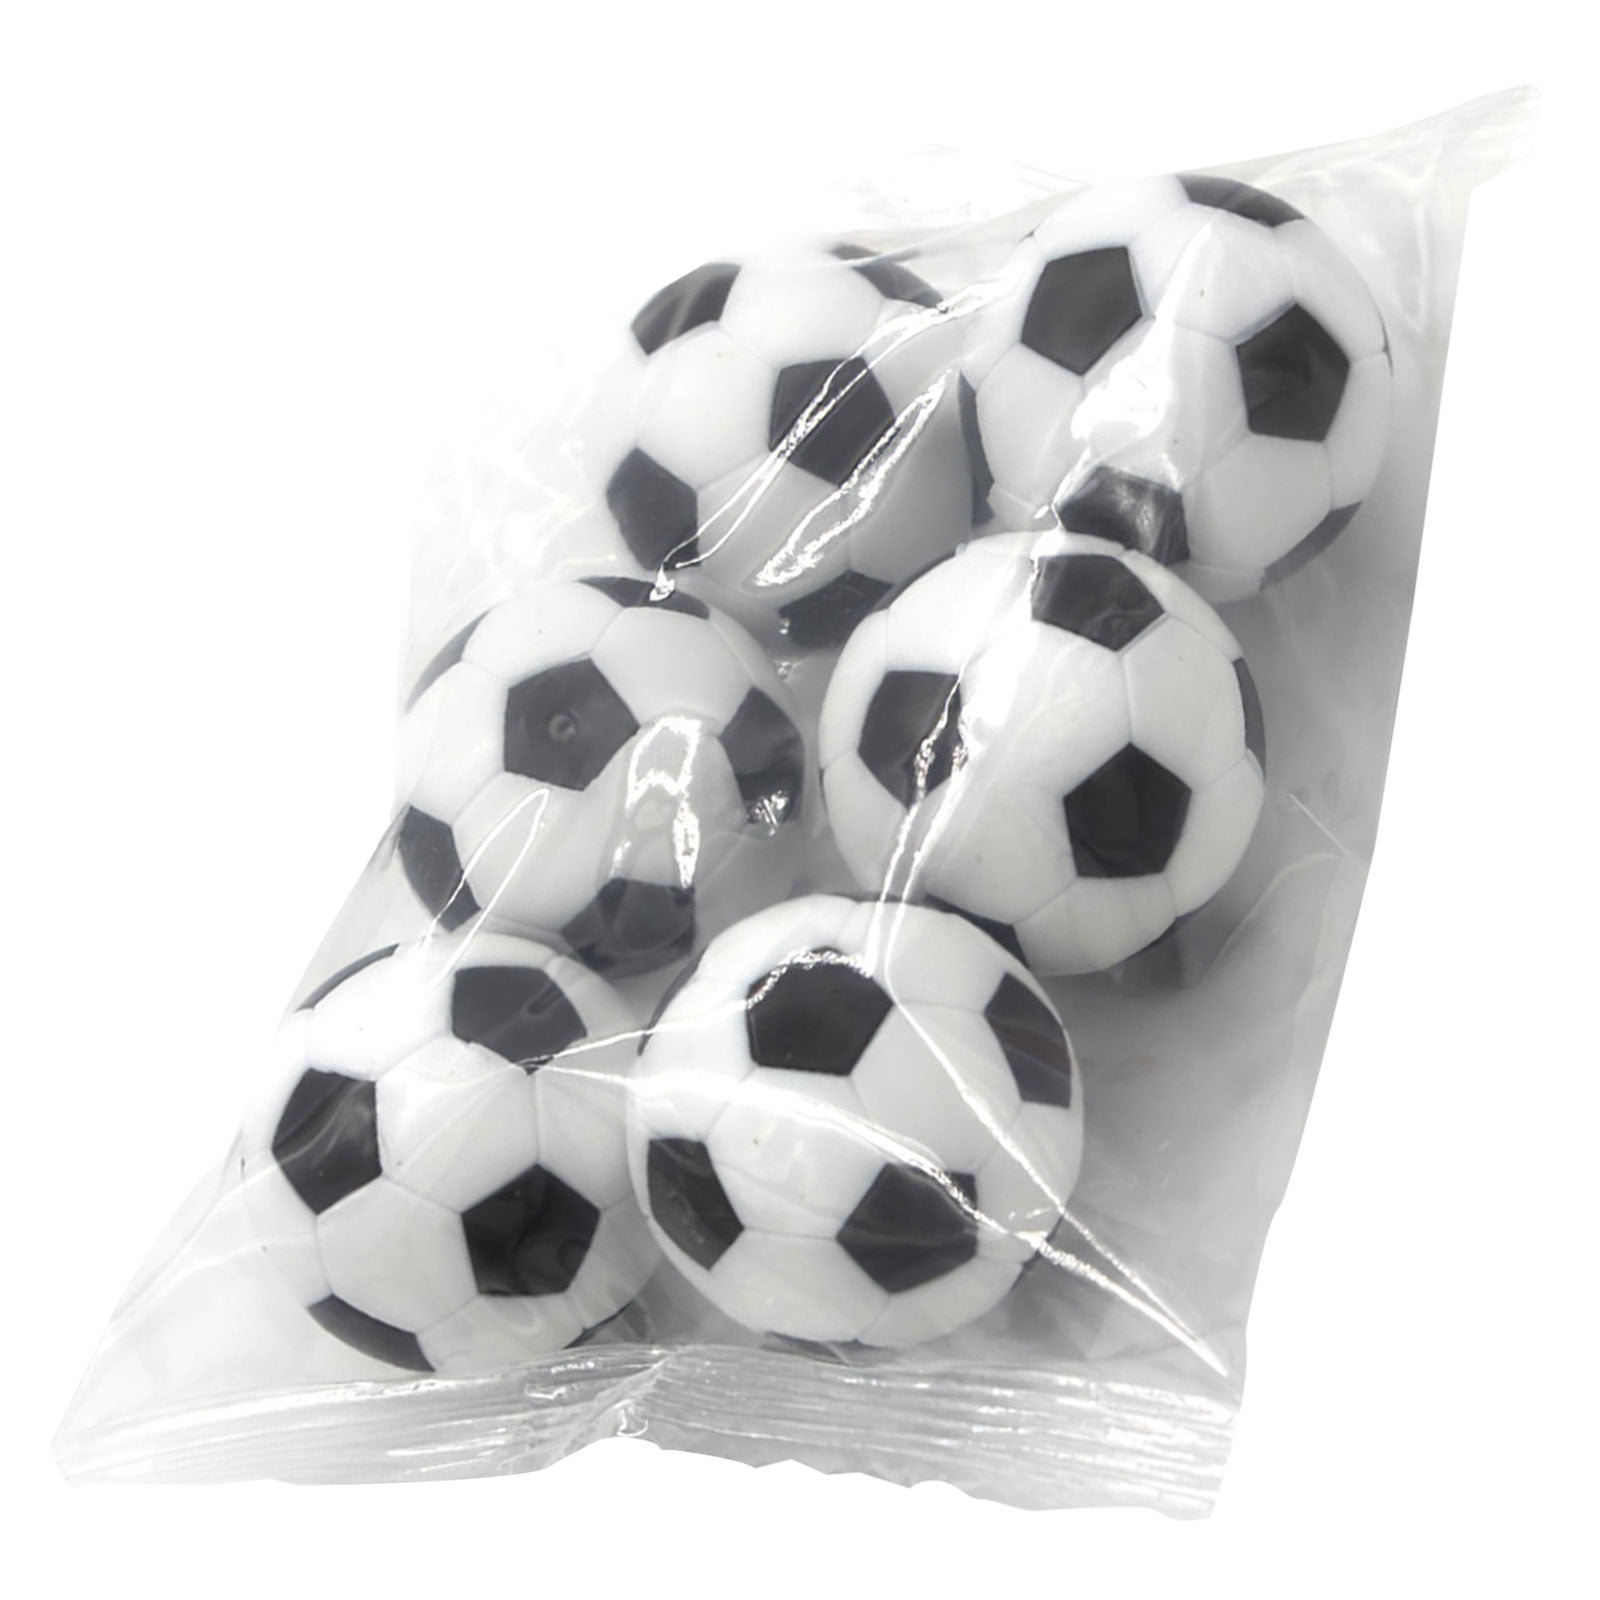 5 White Smooth & 5 Black & White Engraved Table Soccer Balls 10 Foosballs 